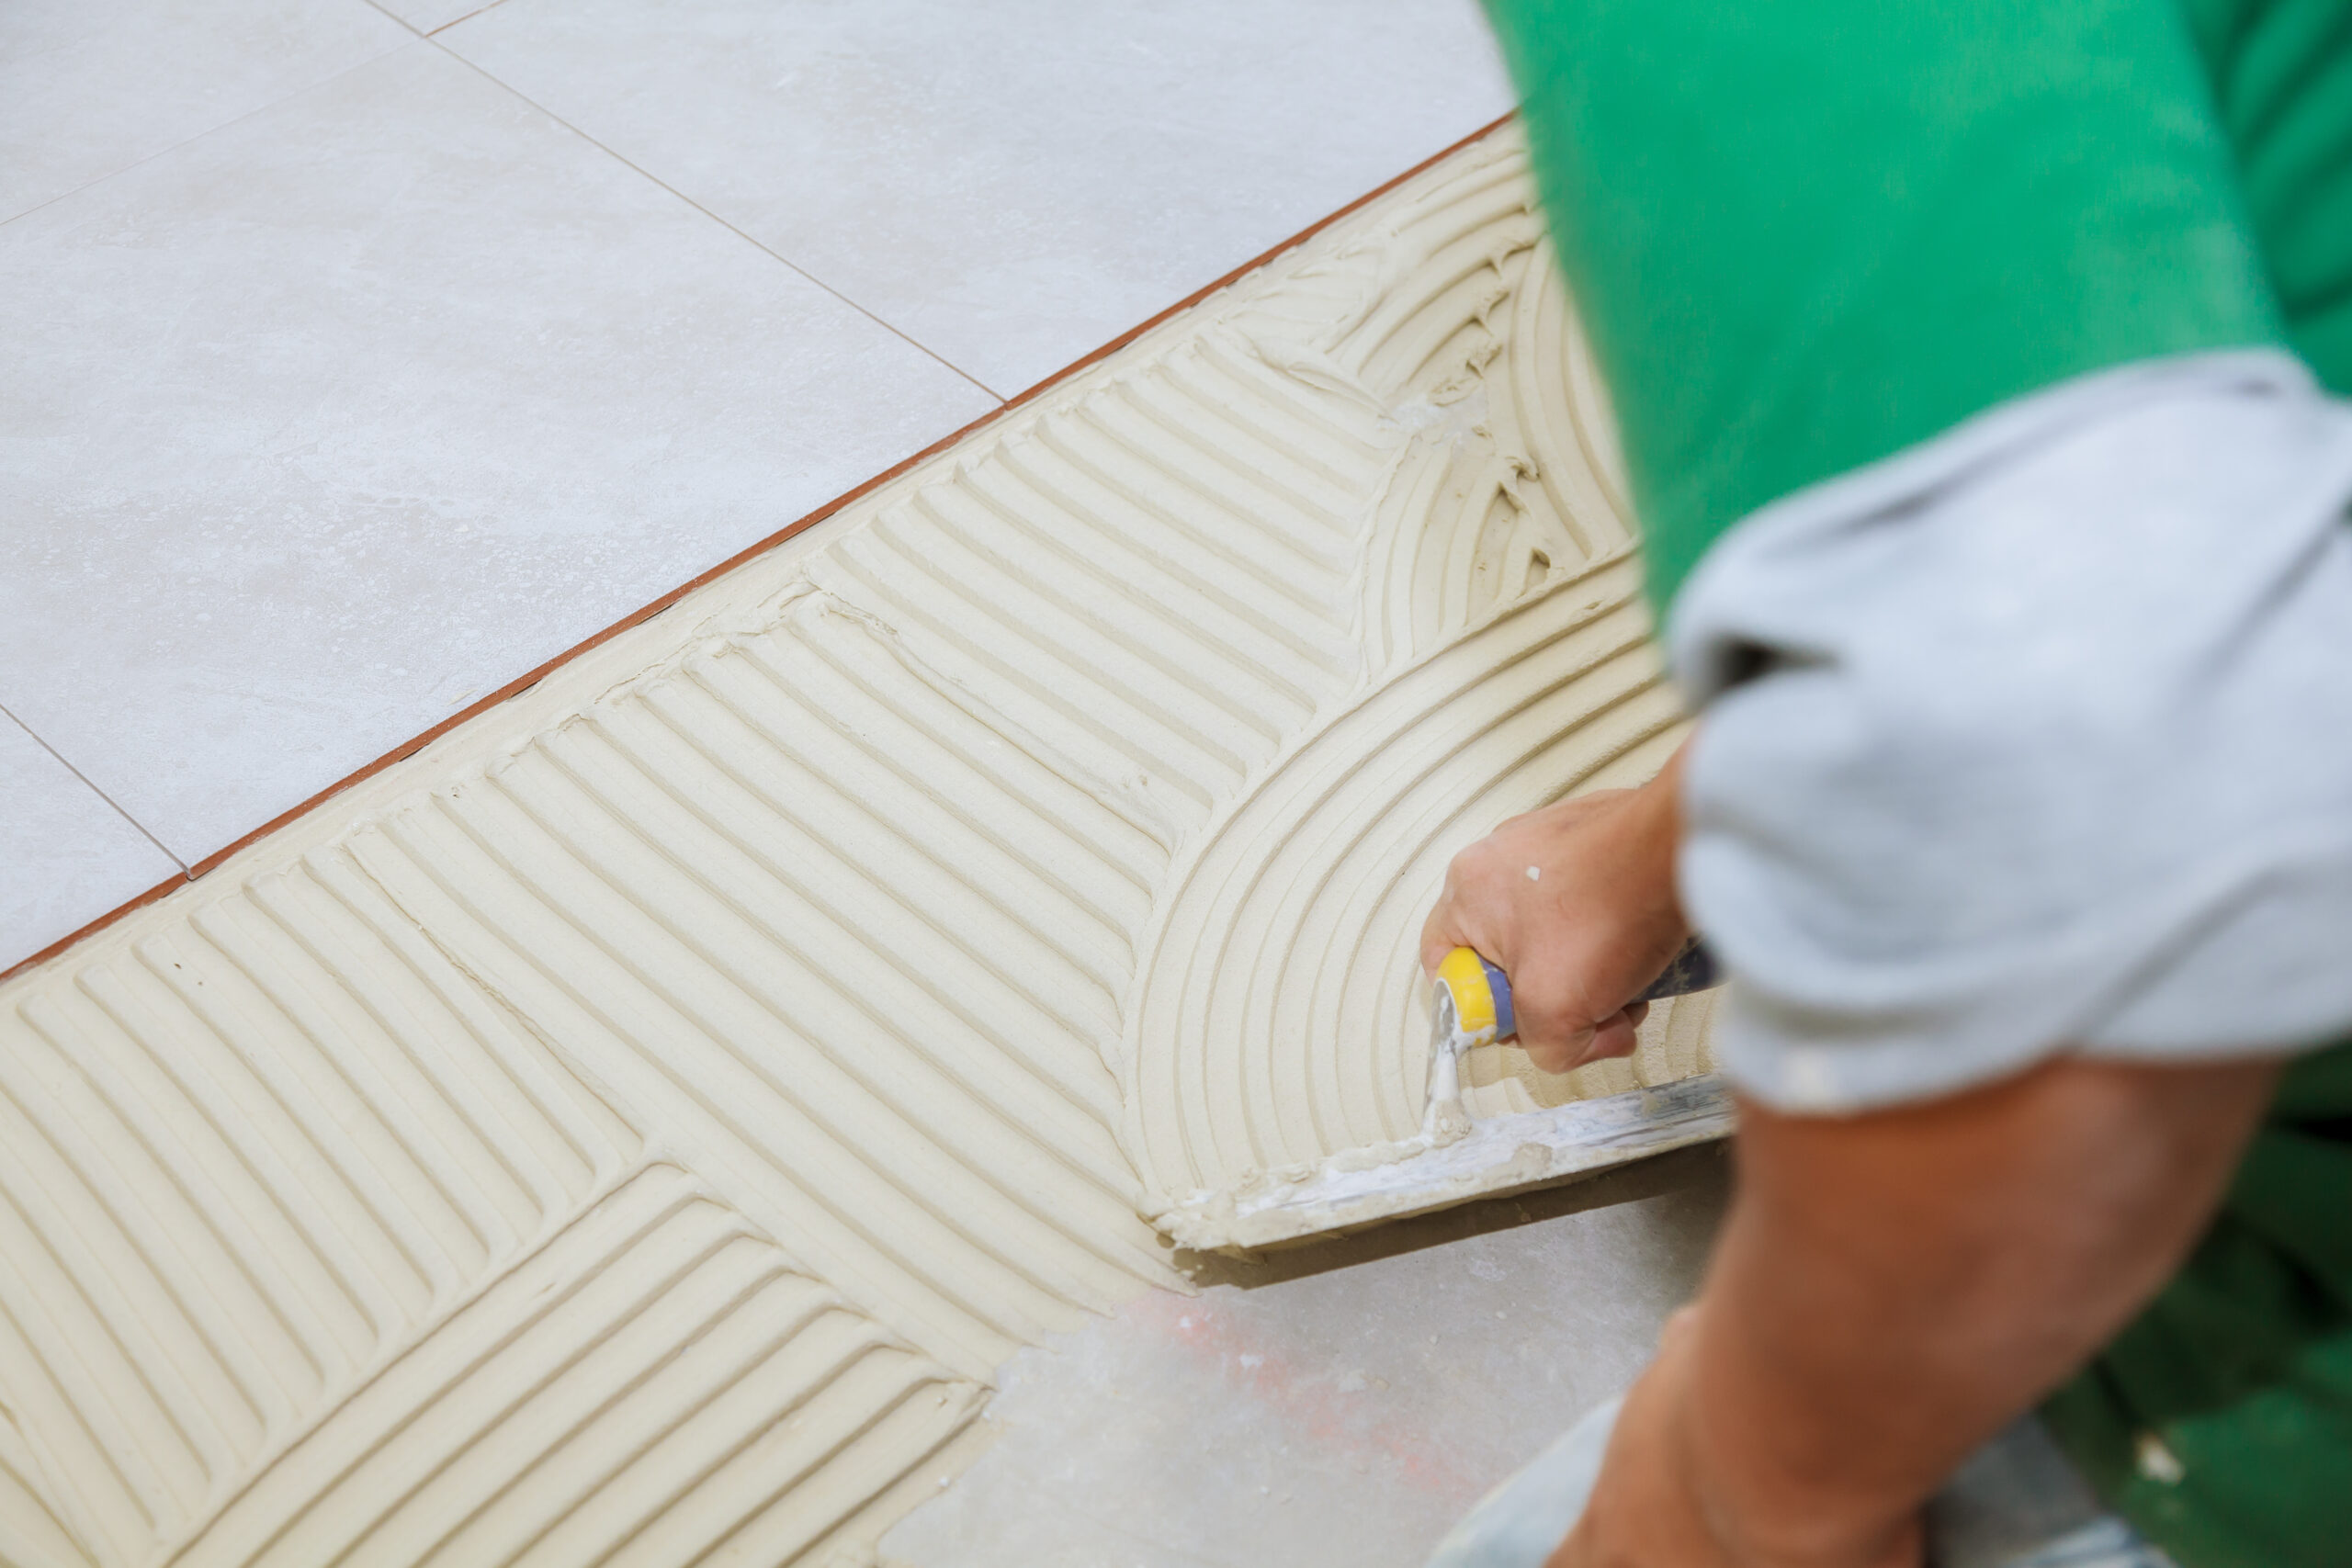 worker-installs-tiles-floor-he-put-glue-using-comb-trowel-master-puts-adhesive